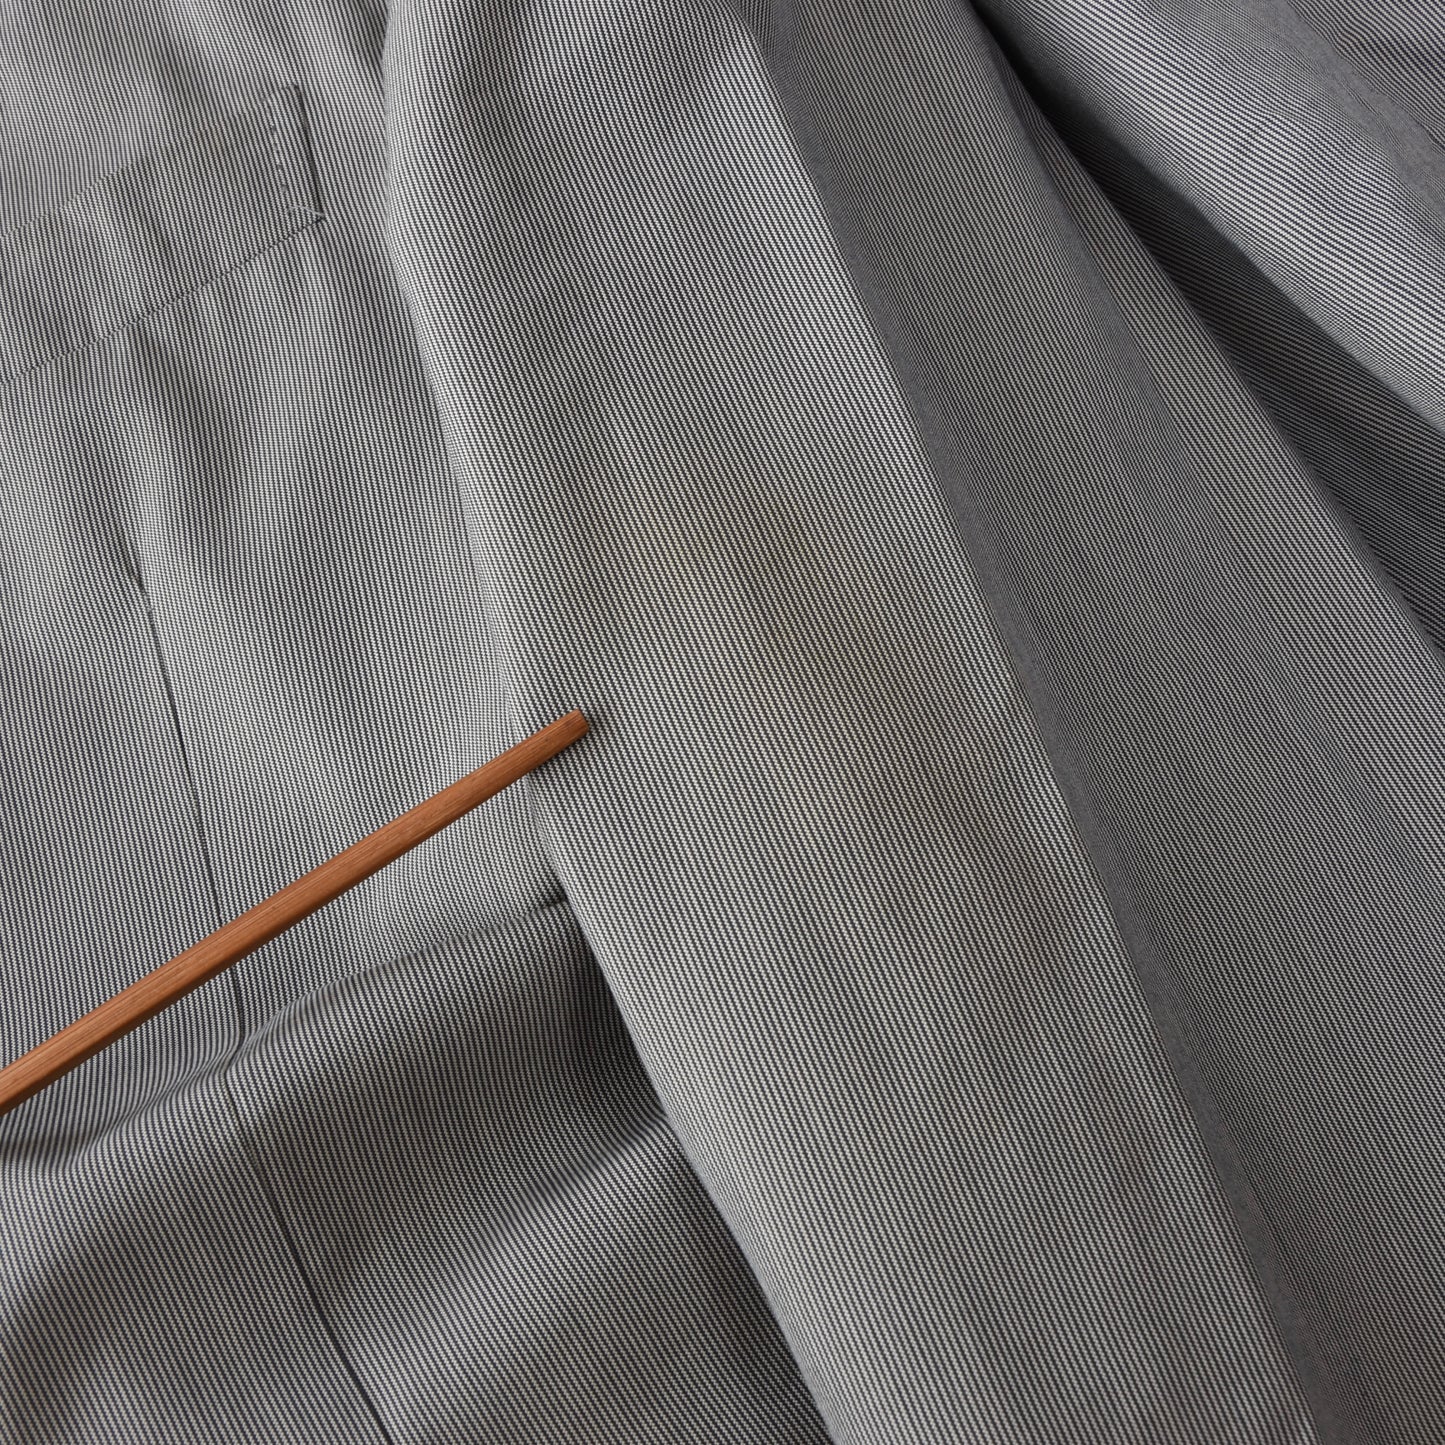 Boglioli Cotton-Silk Jacket Size 52 - Stripes SEE PHOTOS